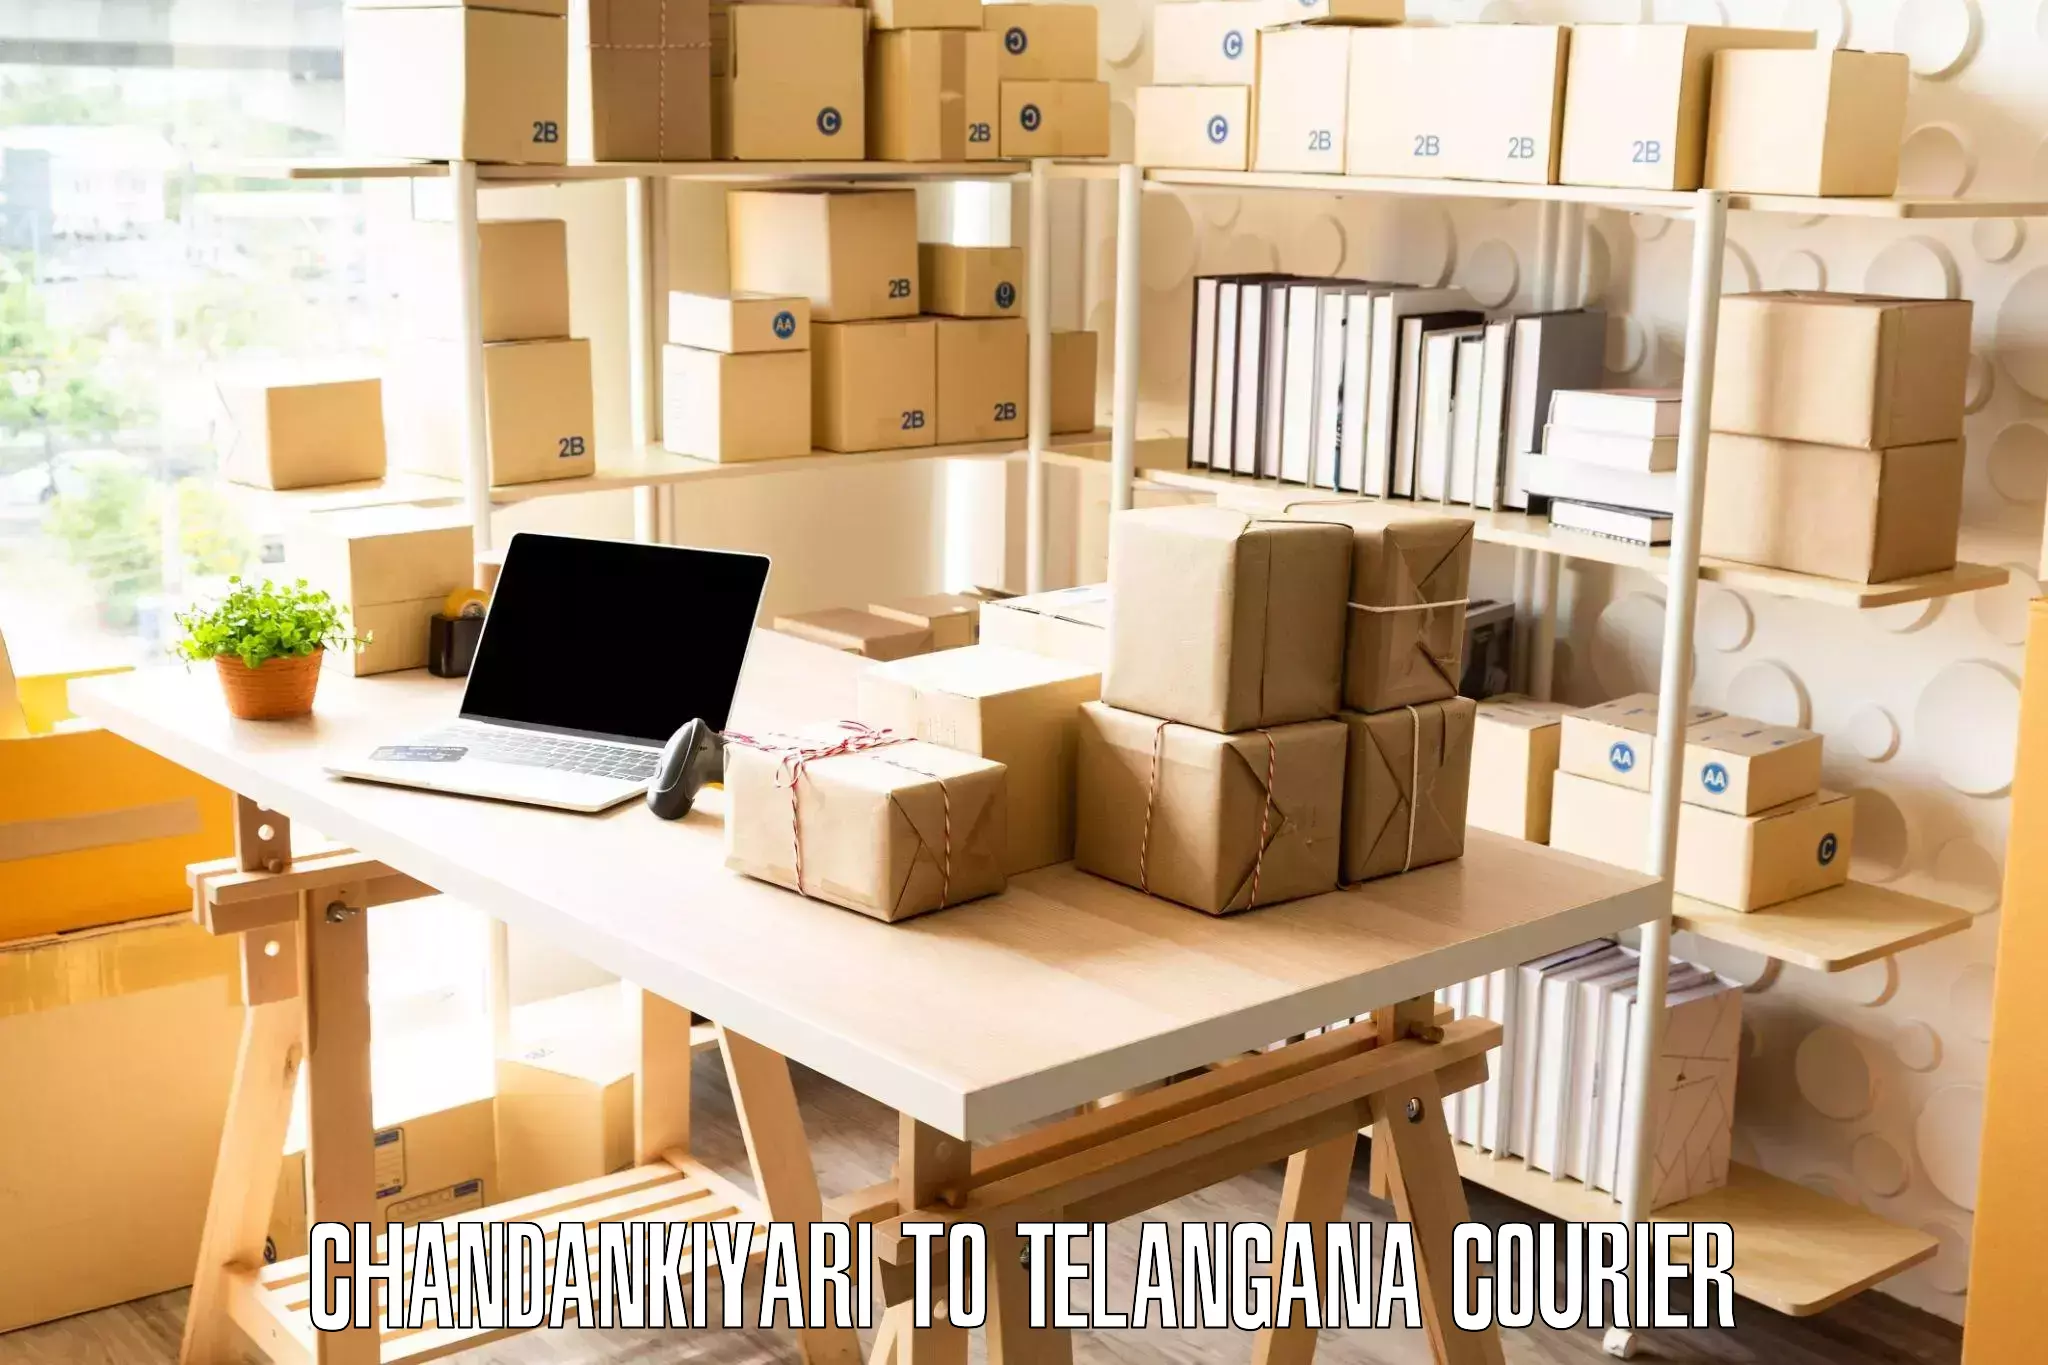 Expert moving and storage Chandankiyari to Chegunta